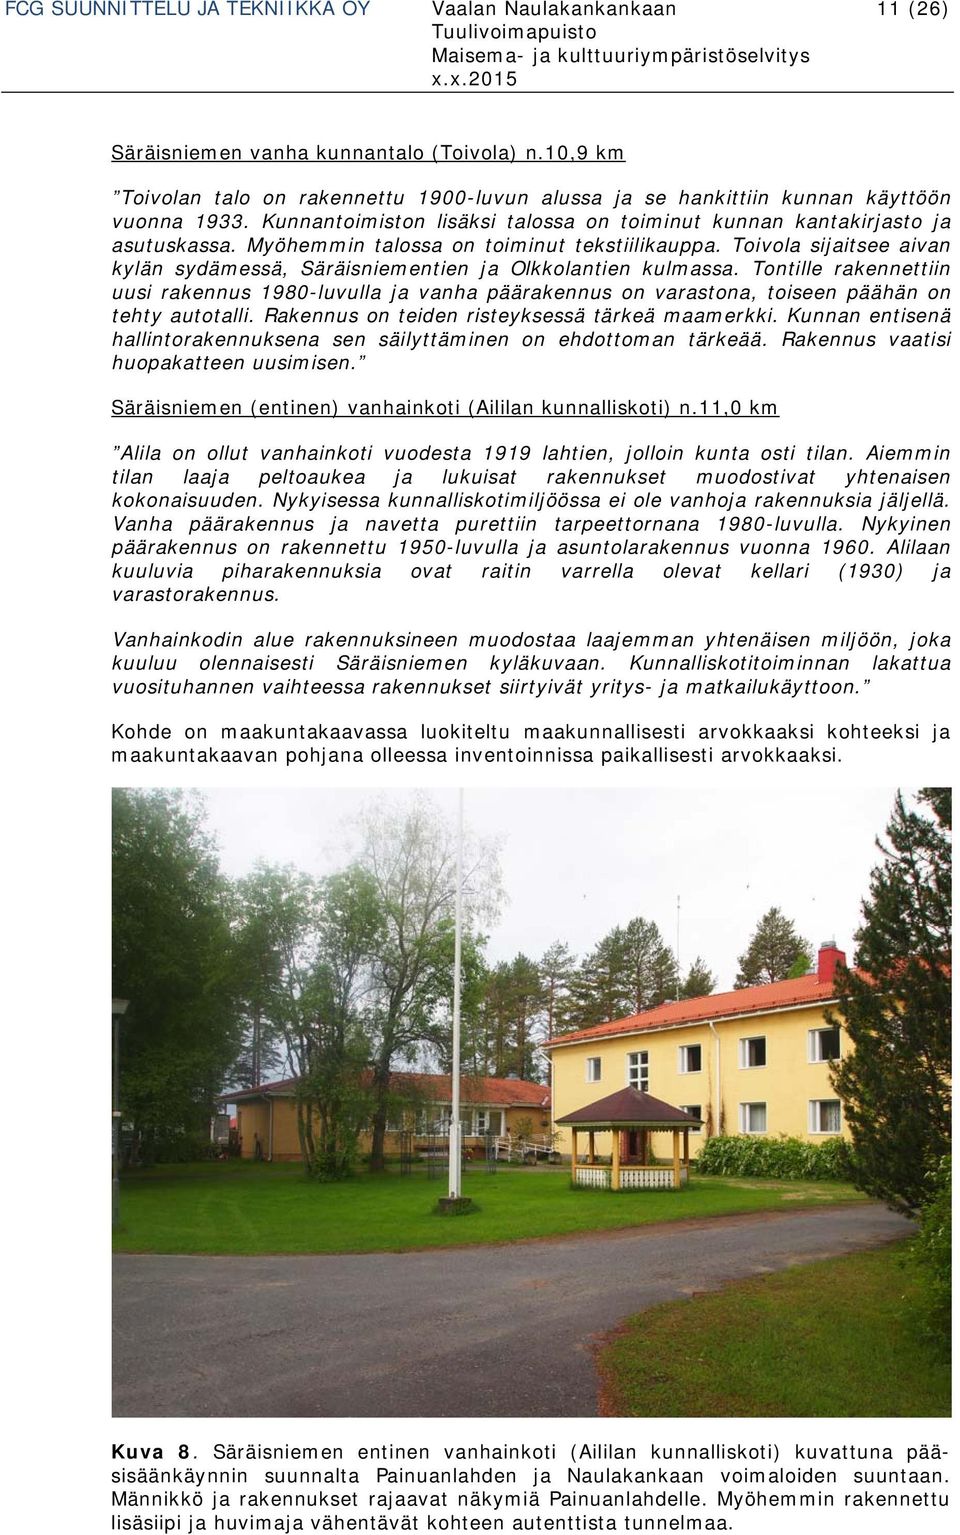 Myöhemmin talossa on toiminut tekstiilikauppa. Toivola sijaitsee aivan kylän sydämessä, Säräisniementien ja Olkkolantien kulmassa.